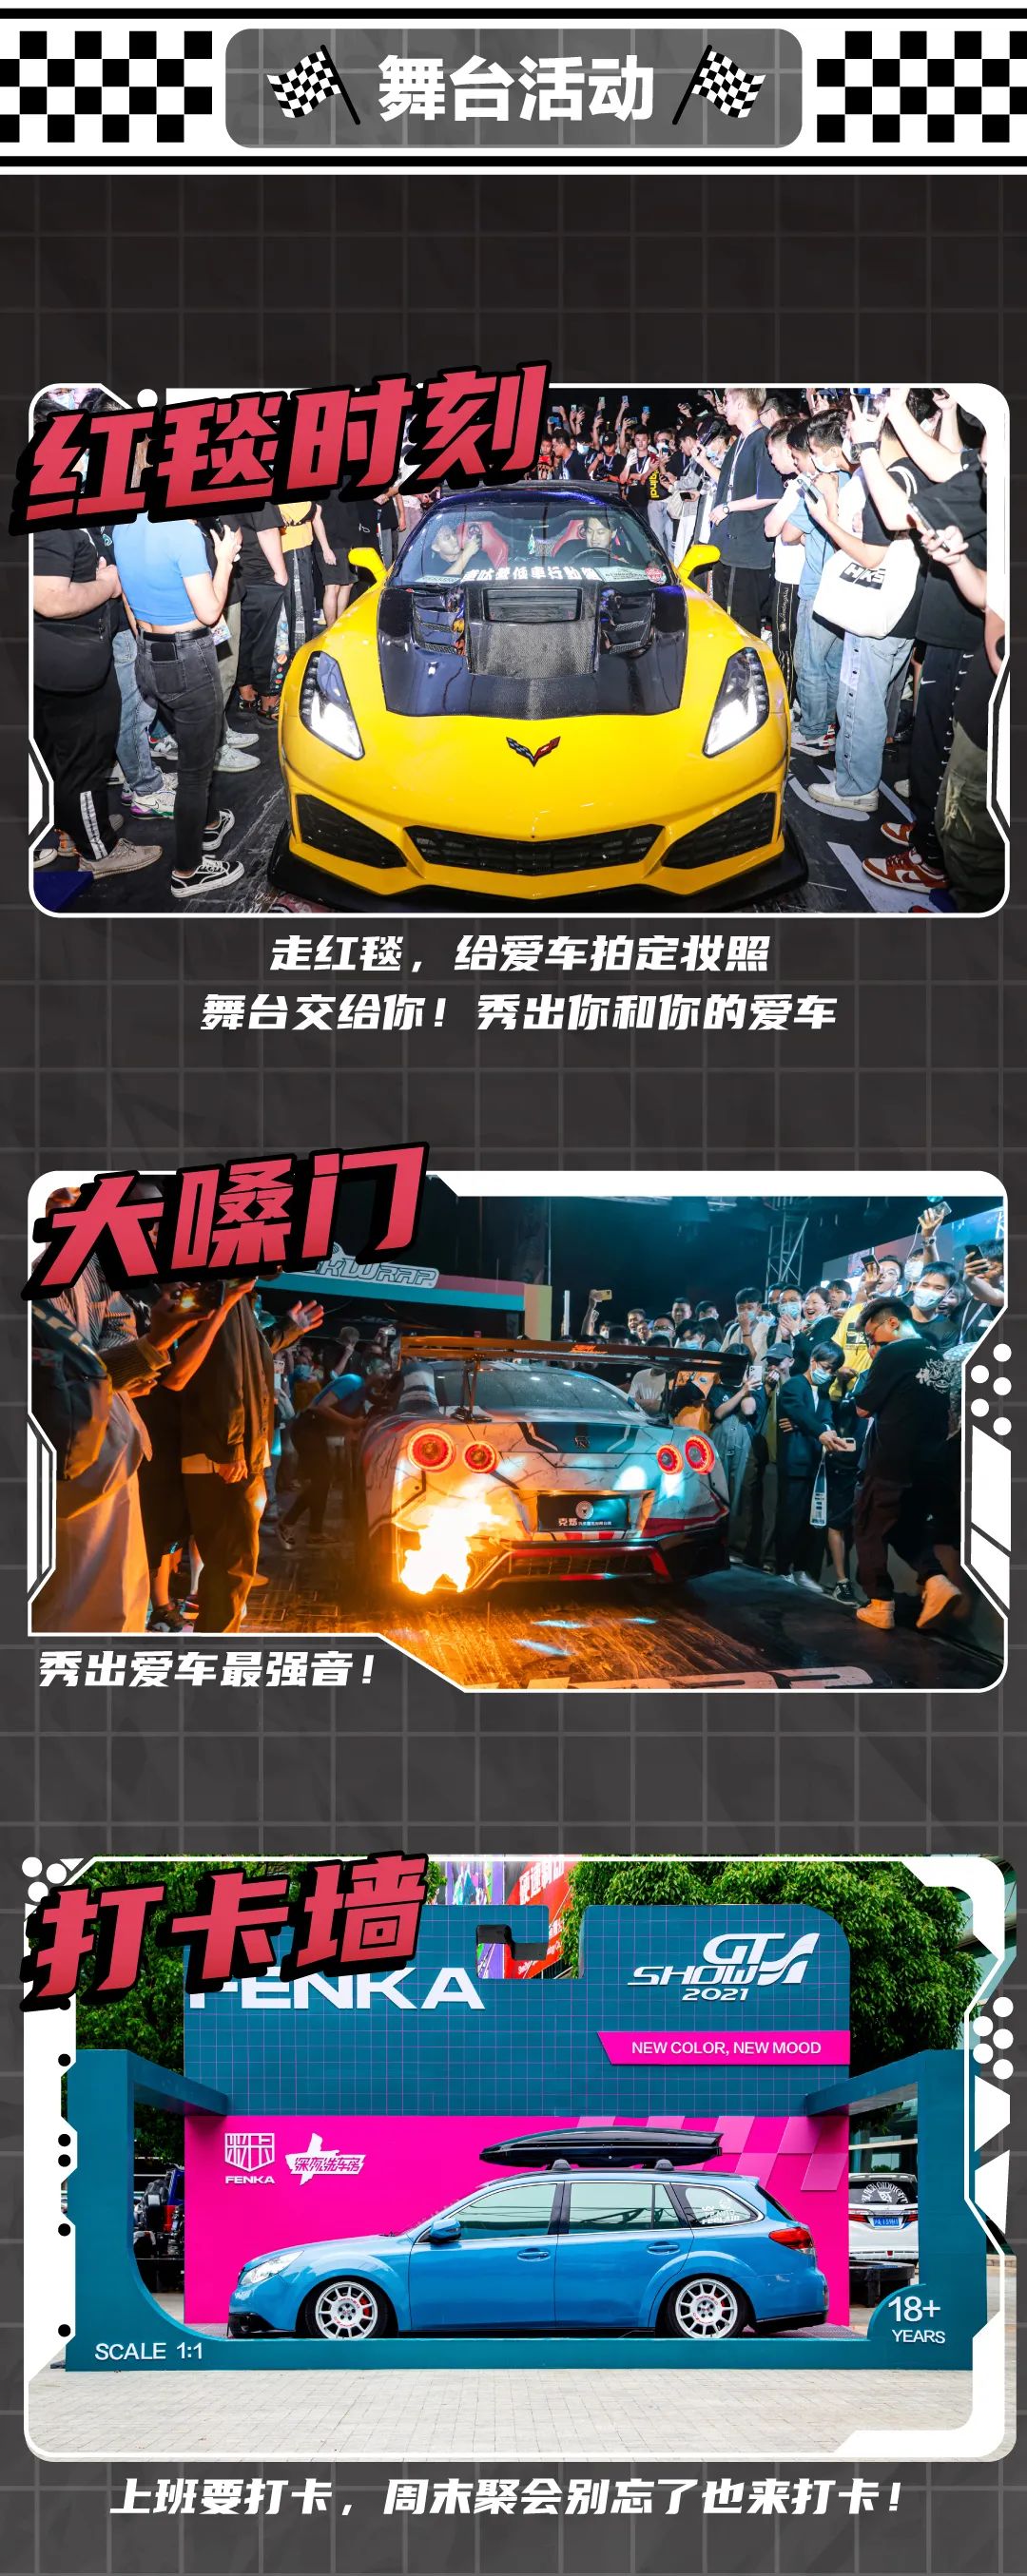 5月18-19日GT Show车迷嘉年华天津站精彩活动提前揭秘